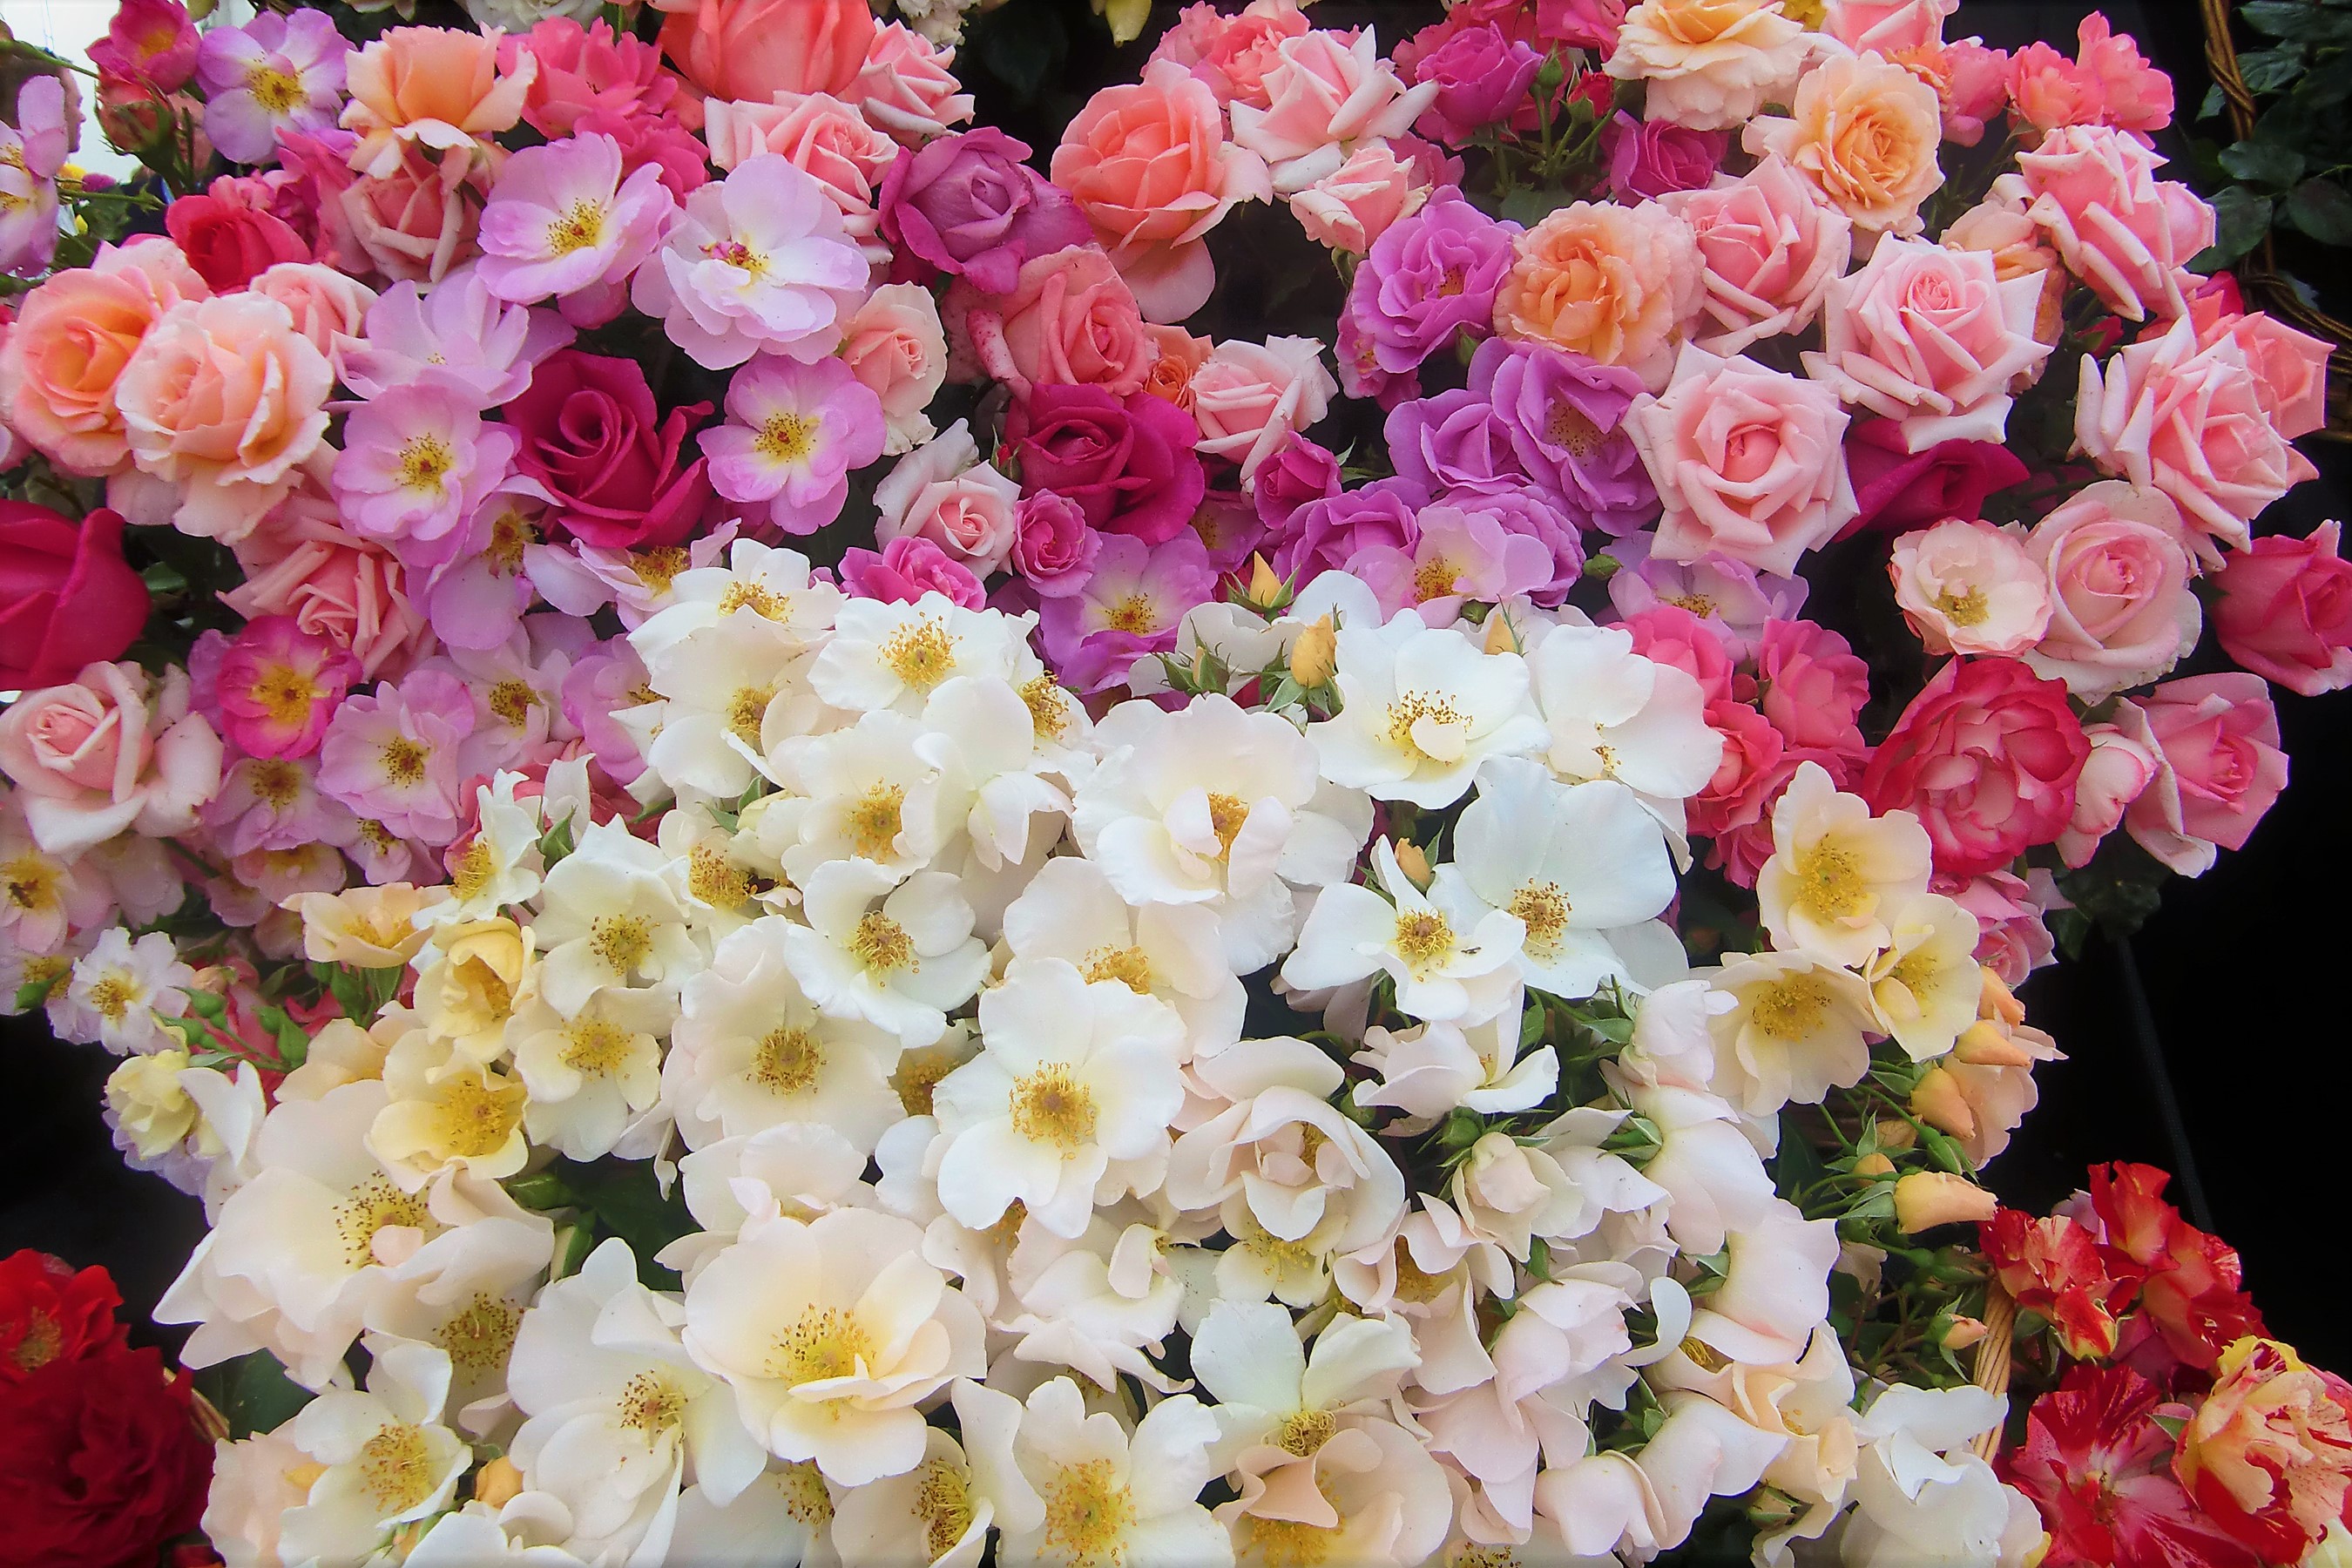 Скачать обои бесплатно Цветок, Роза, Цвета, Красочный, Белый Цветок, Фиолетовый Цветок, Земля/природа, Розовый Цветок, Флауэрсы картинка на рабочий стол ПК